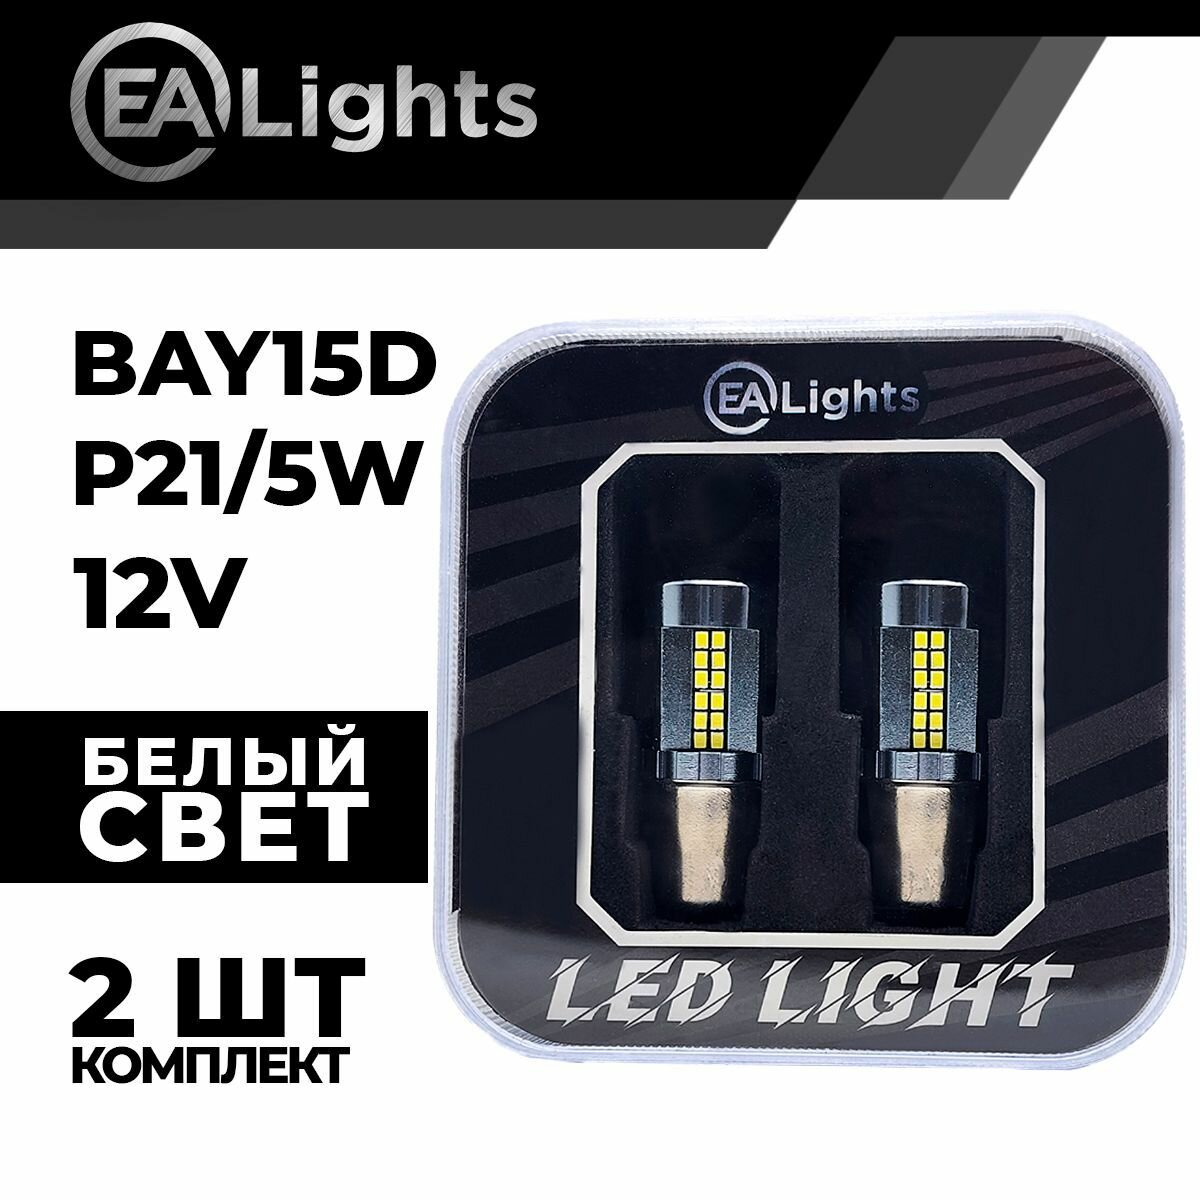 Автомобильная светодиодная LED лампа BAY15D P21/5W (чип 2016-54) для габаритных огней и ДХО, 12в белый свет, 2 шт